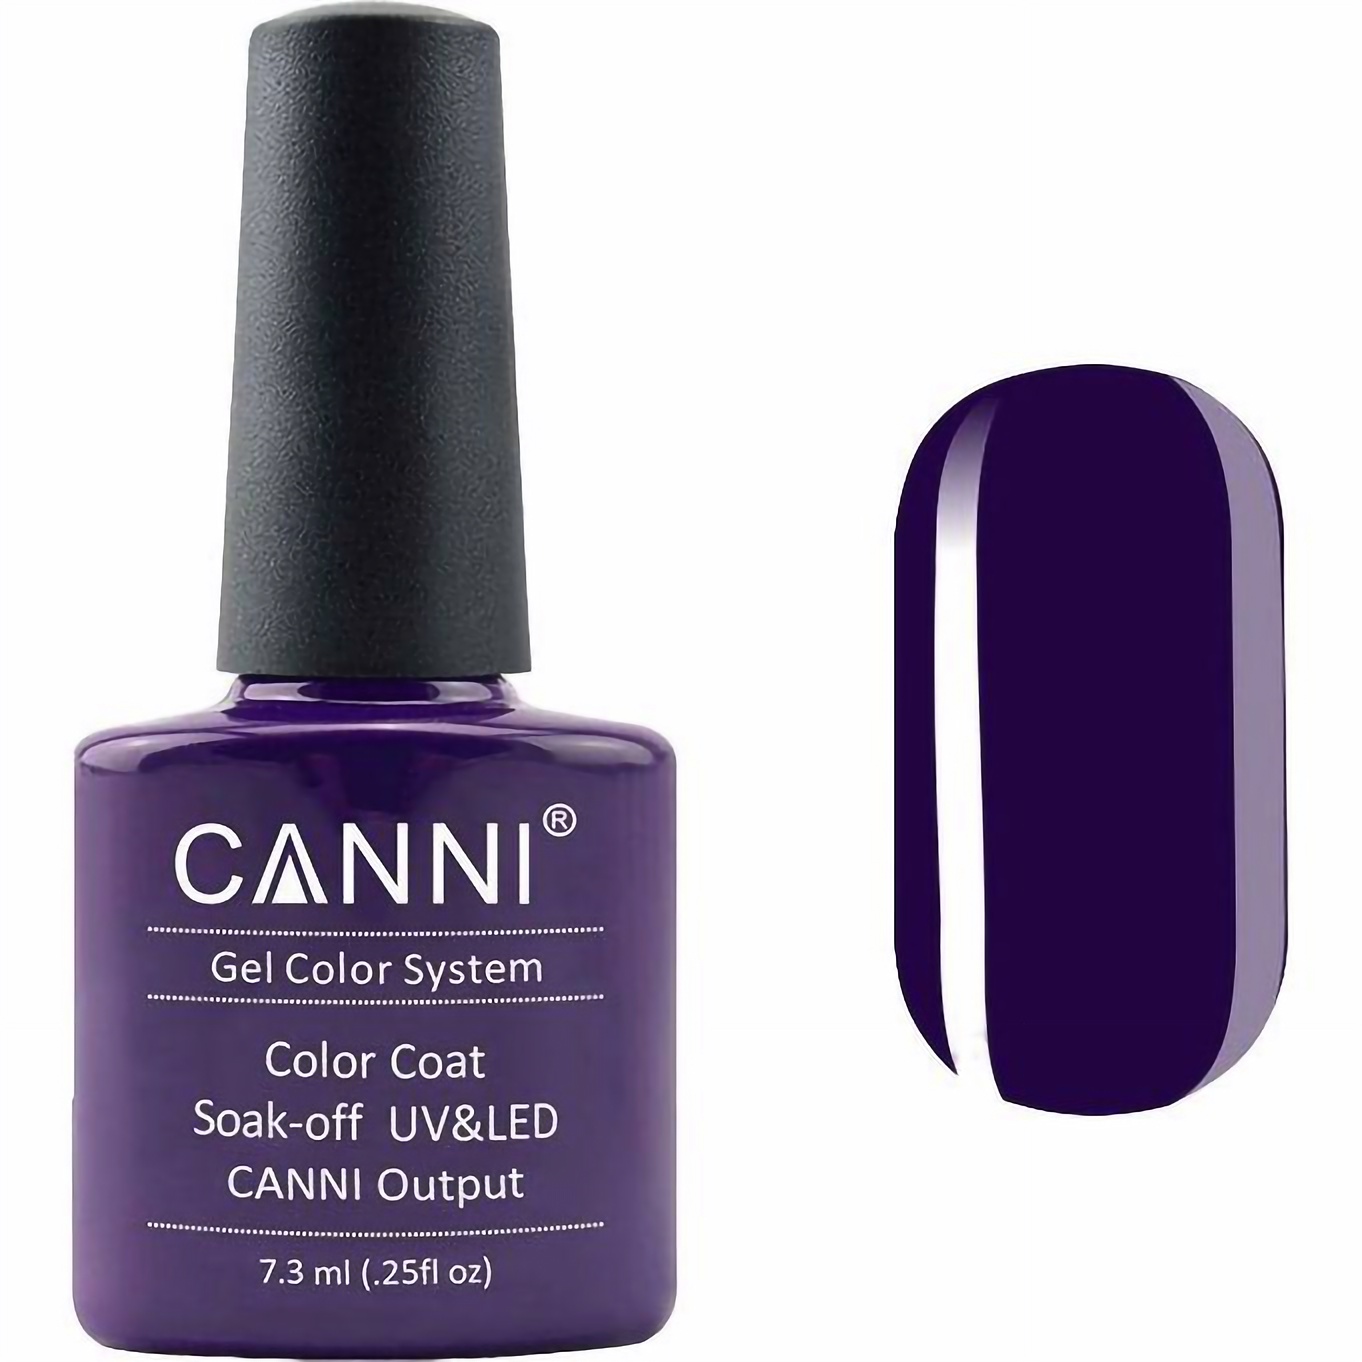 Гель-лак Canni Color Coat Soak-off UV&LED 176 темно-баклажановий 7.3 мл - фото 1